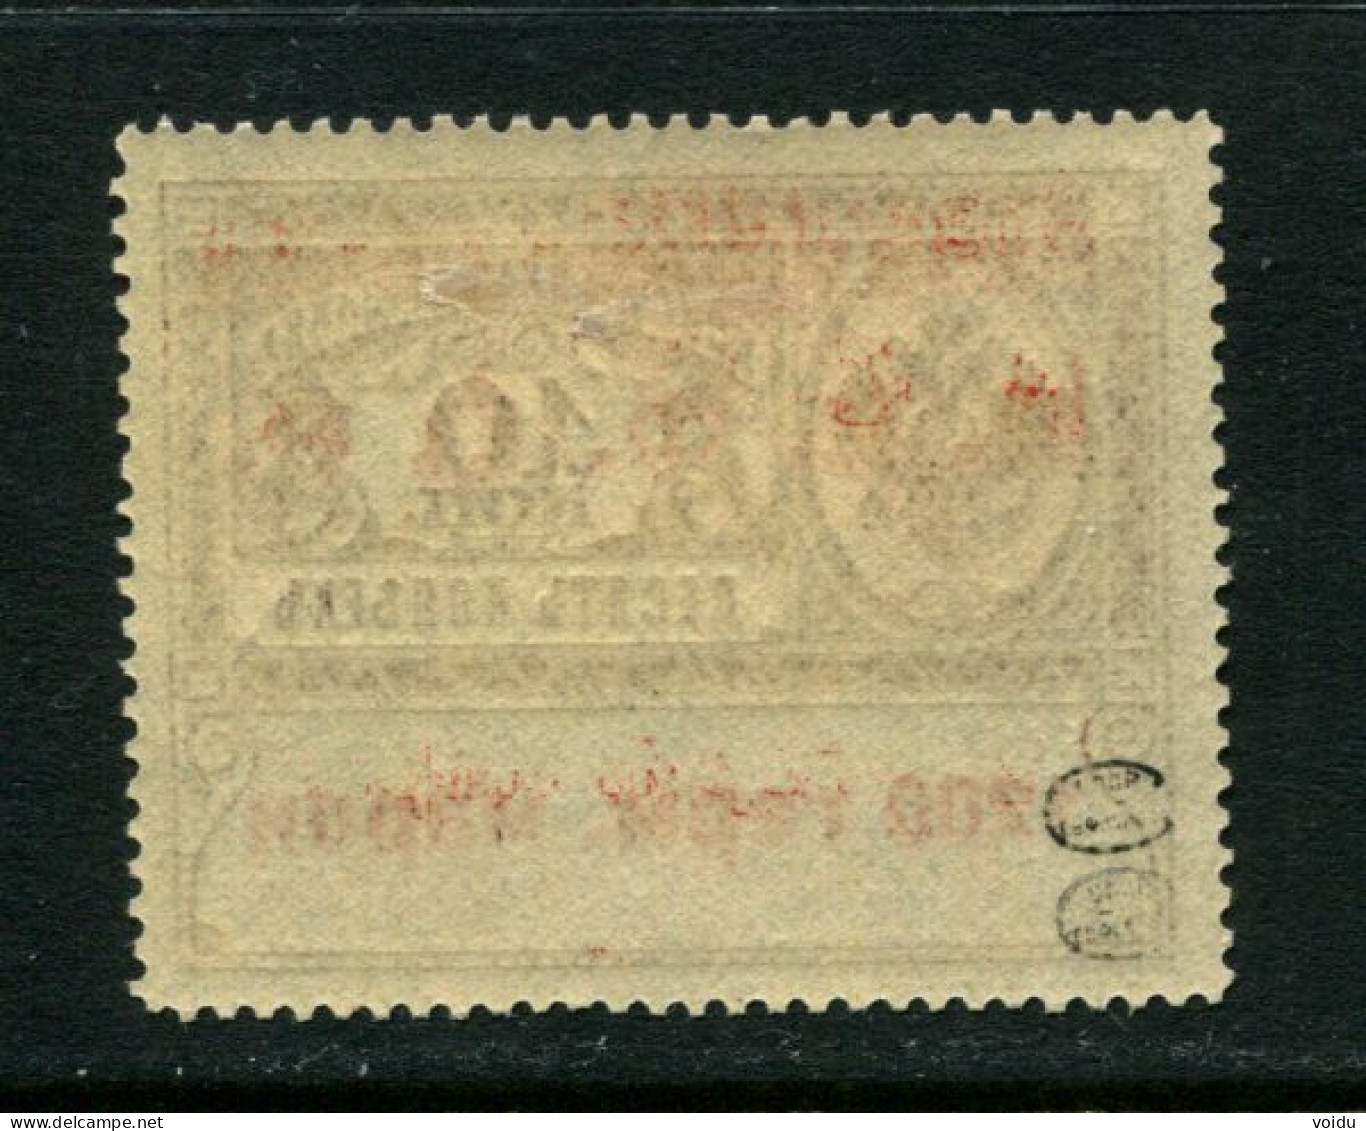 1922 1200 Germ Mark Consular Fee Stamp MlvH*, Airmail, RSFSR, Russia (Zag. Sl 9, Zv. C5, Type I, CV $1,000) - Ungebraucht